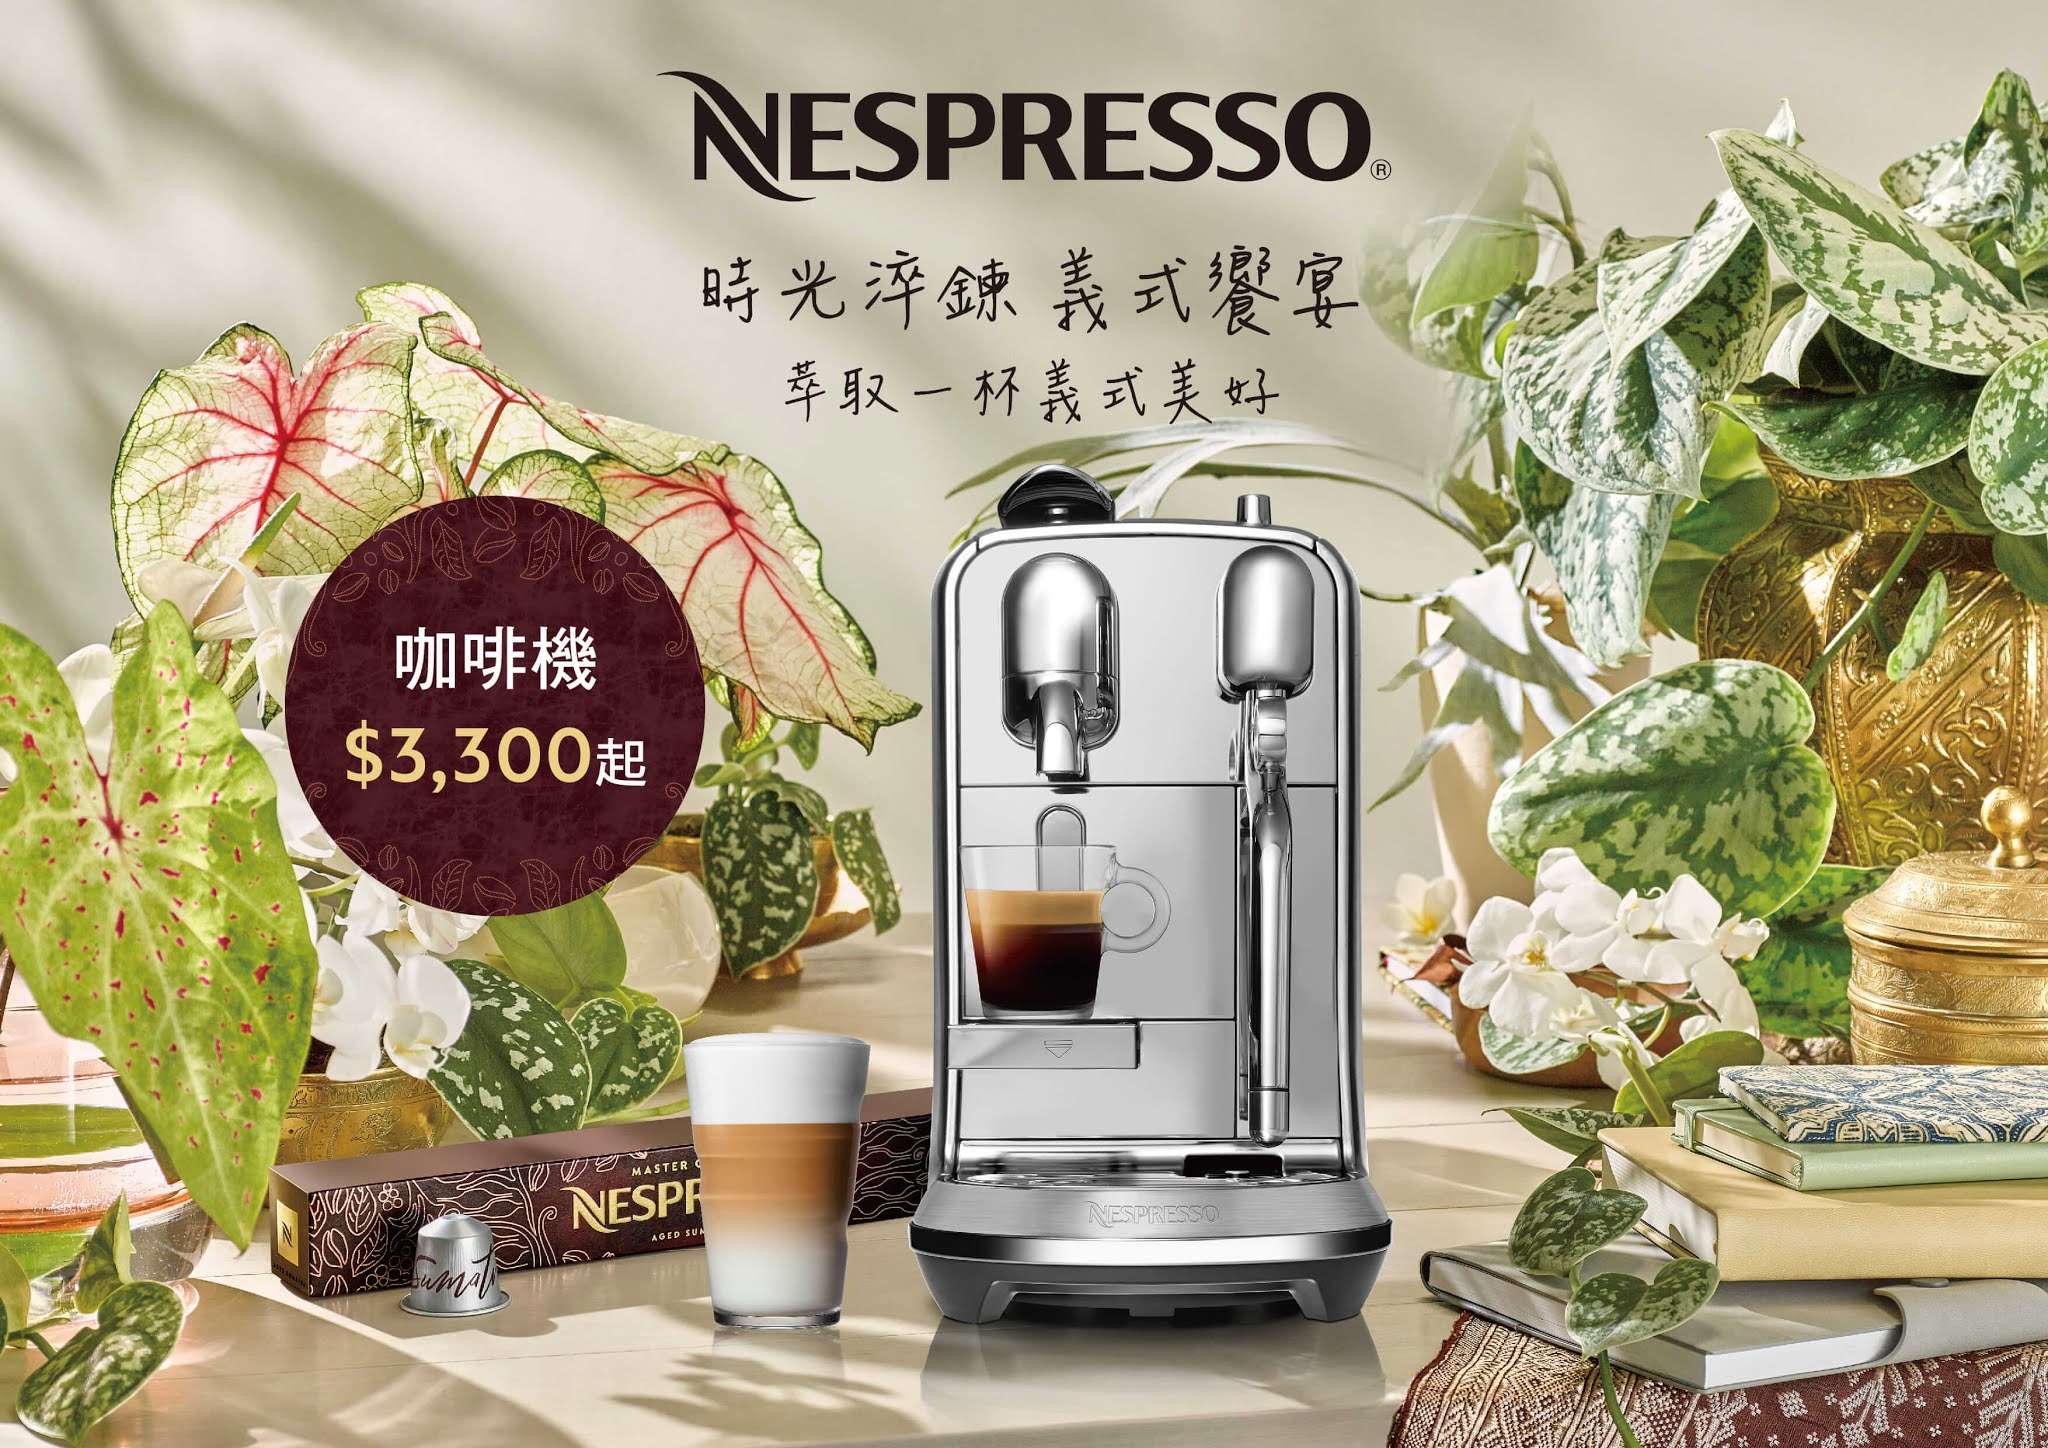 China Post e-News: 國際咖啡日Nespresso推出全方位頂級咖啡體驗攜手鉅